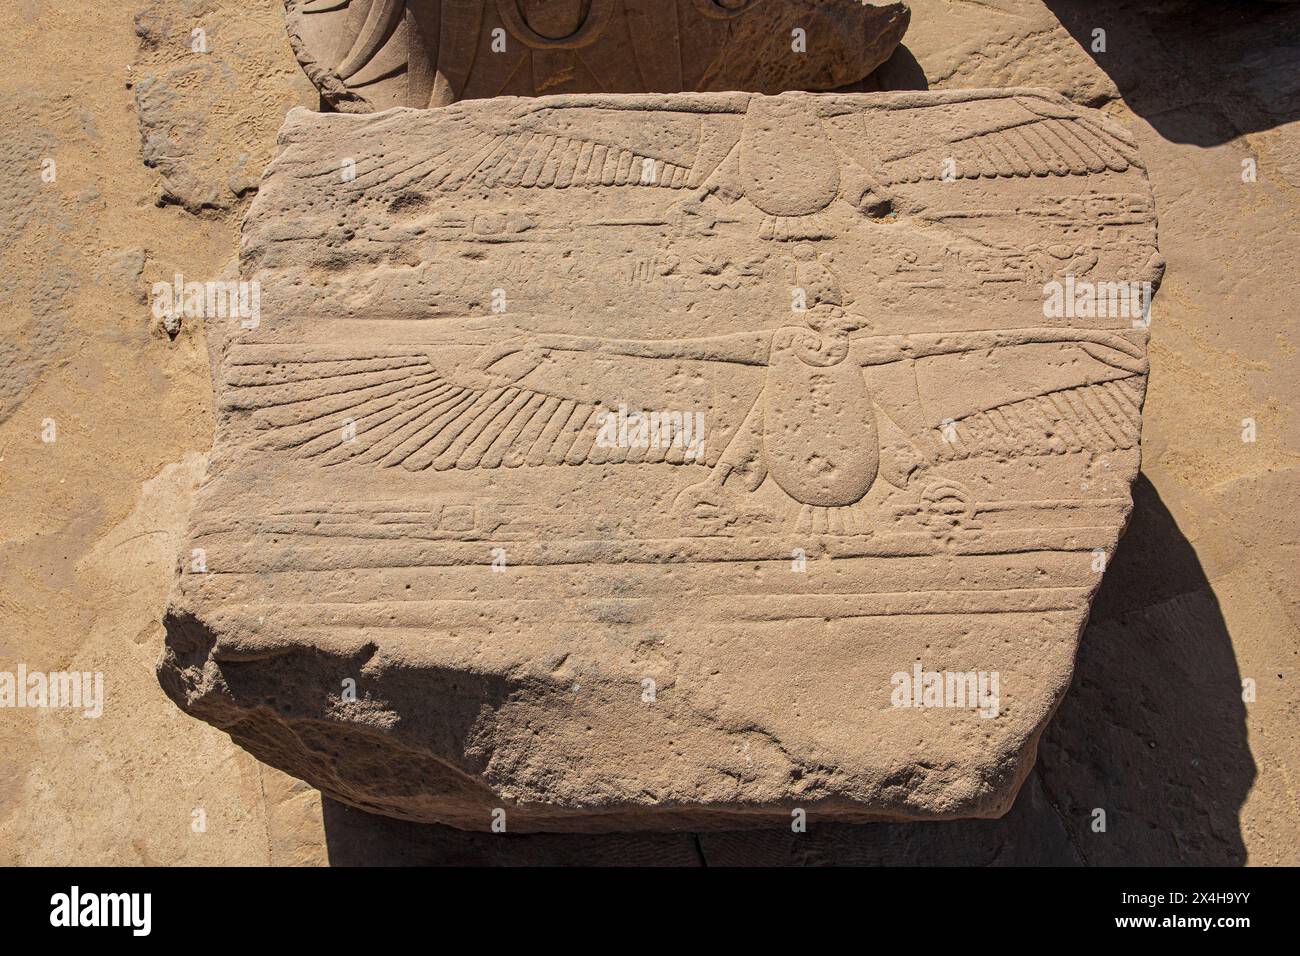 Un rocher avec un relief de la déesse vautours Nekhbet, patronne de l'Egypte ancienne au complexe du Temple Philae sur l'île Agilki (Nubie) Egypte Banque D'Images